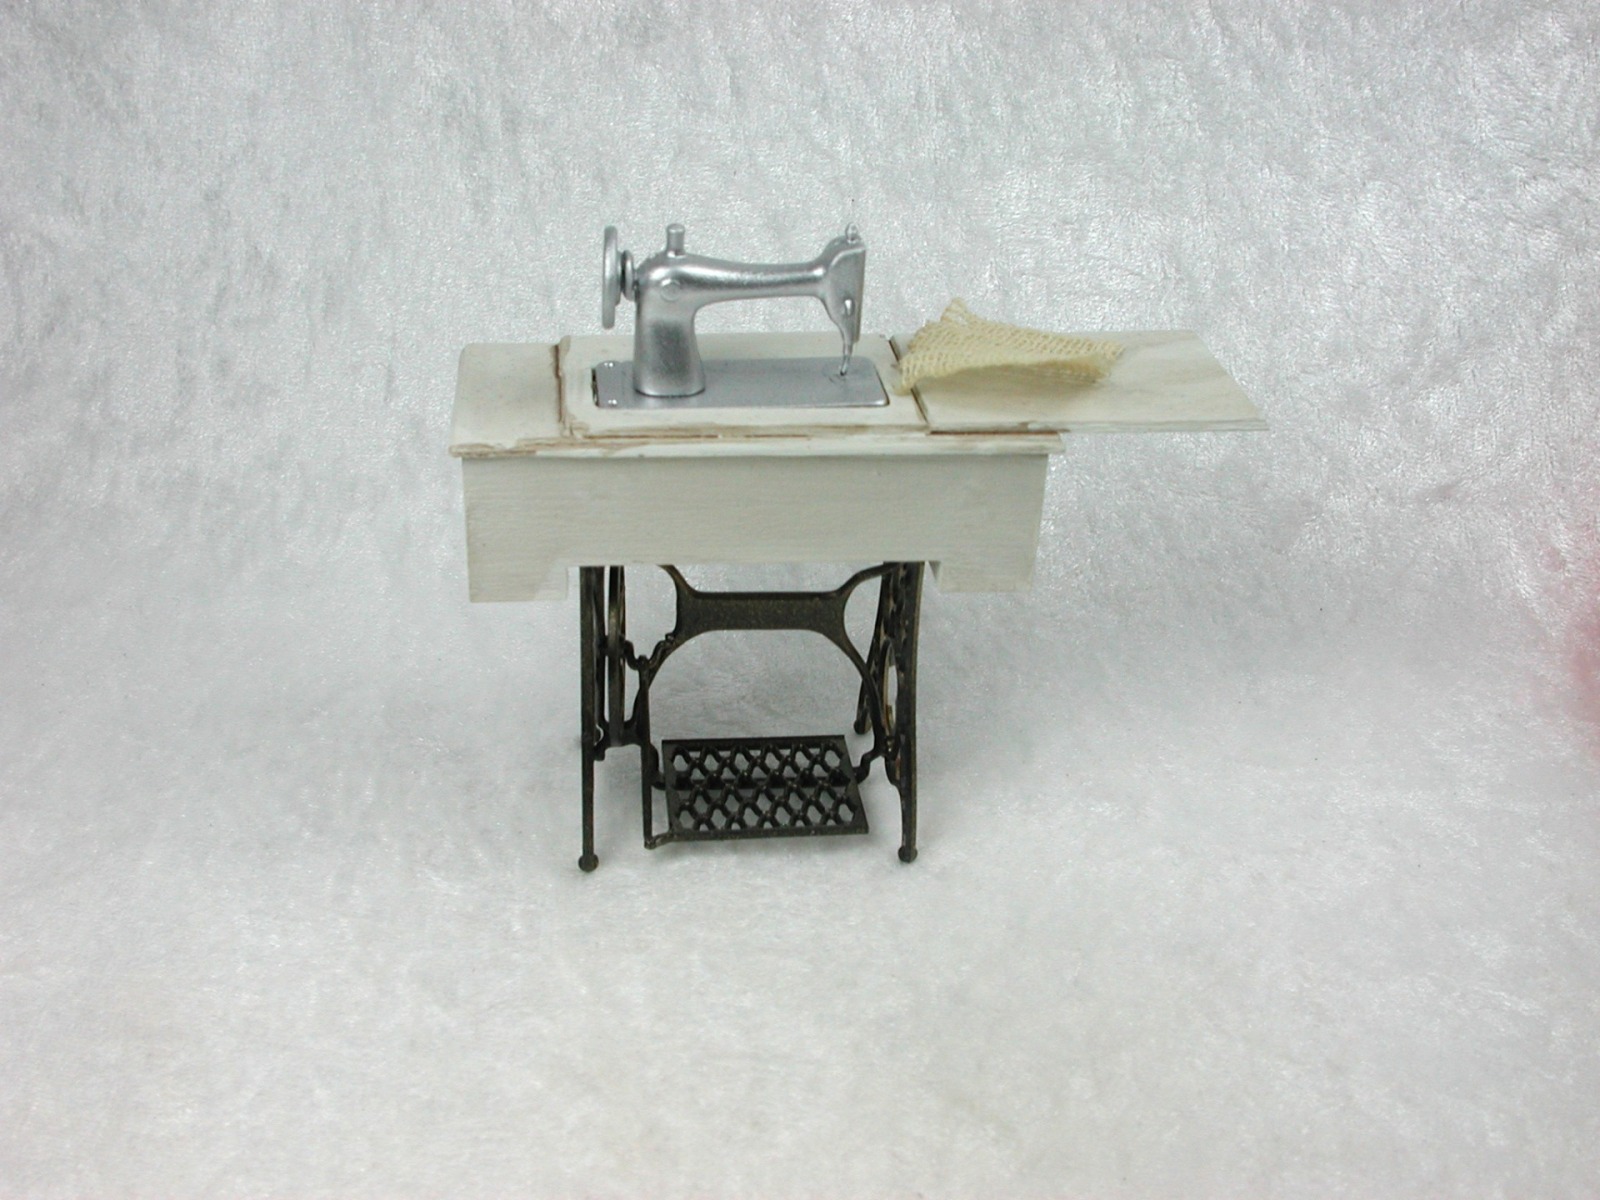 Vintage Nähmaschine, Nähmaschinentisch in Miniatur, 1zu12 2